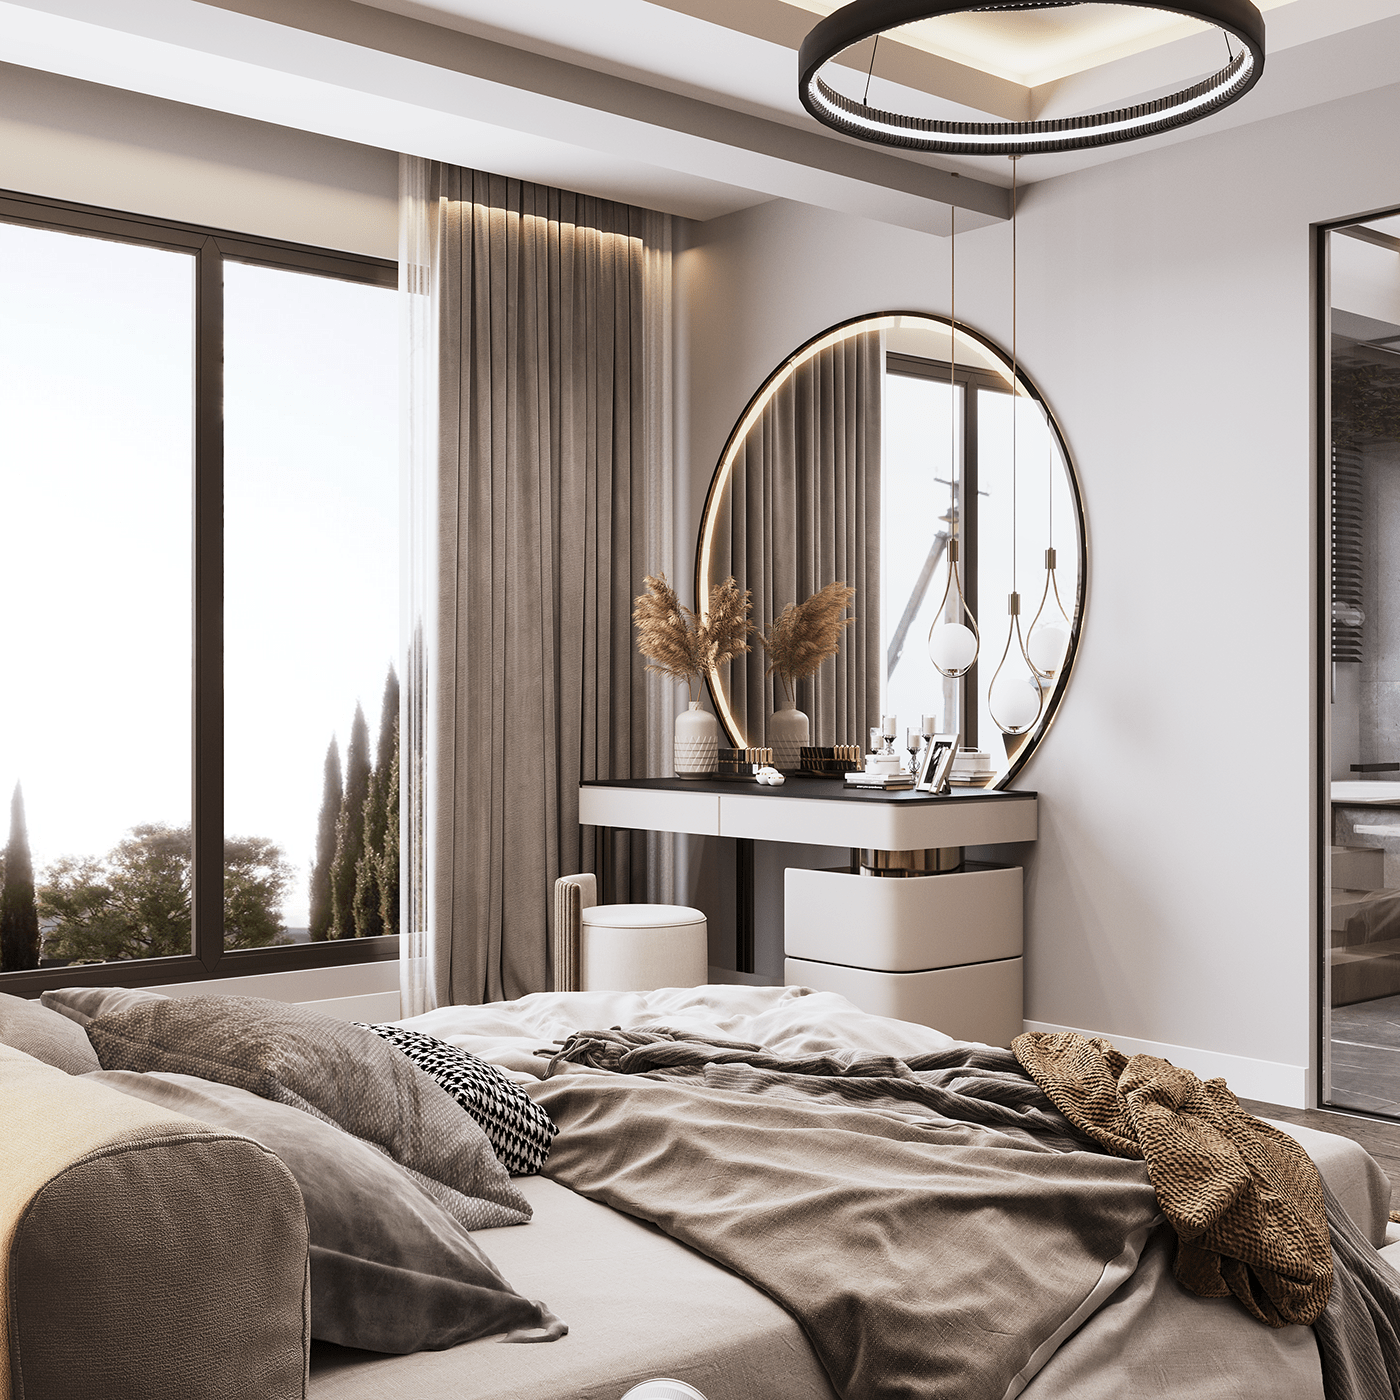 3dsmax bedroom corona render  design Interior